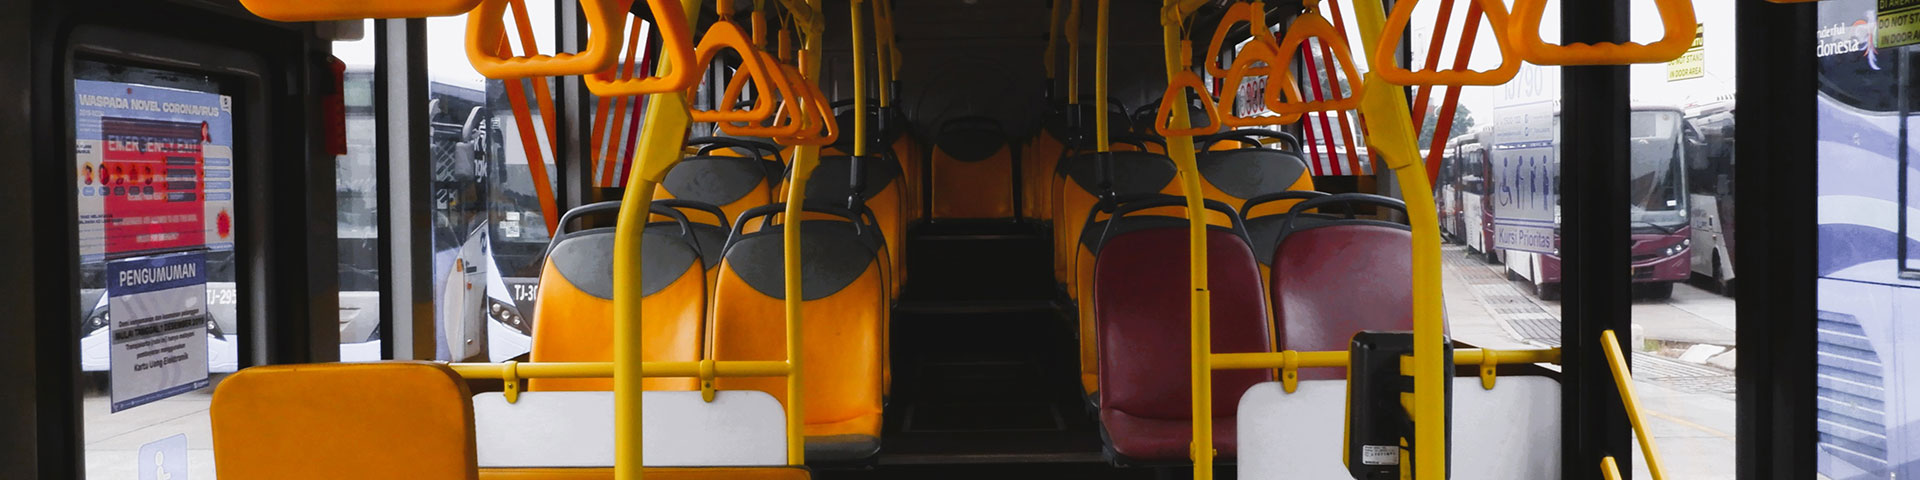 Gelbe und schwarze Sitze in einem Bus.